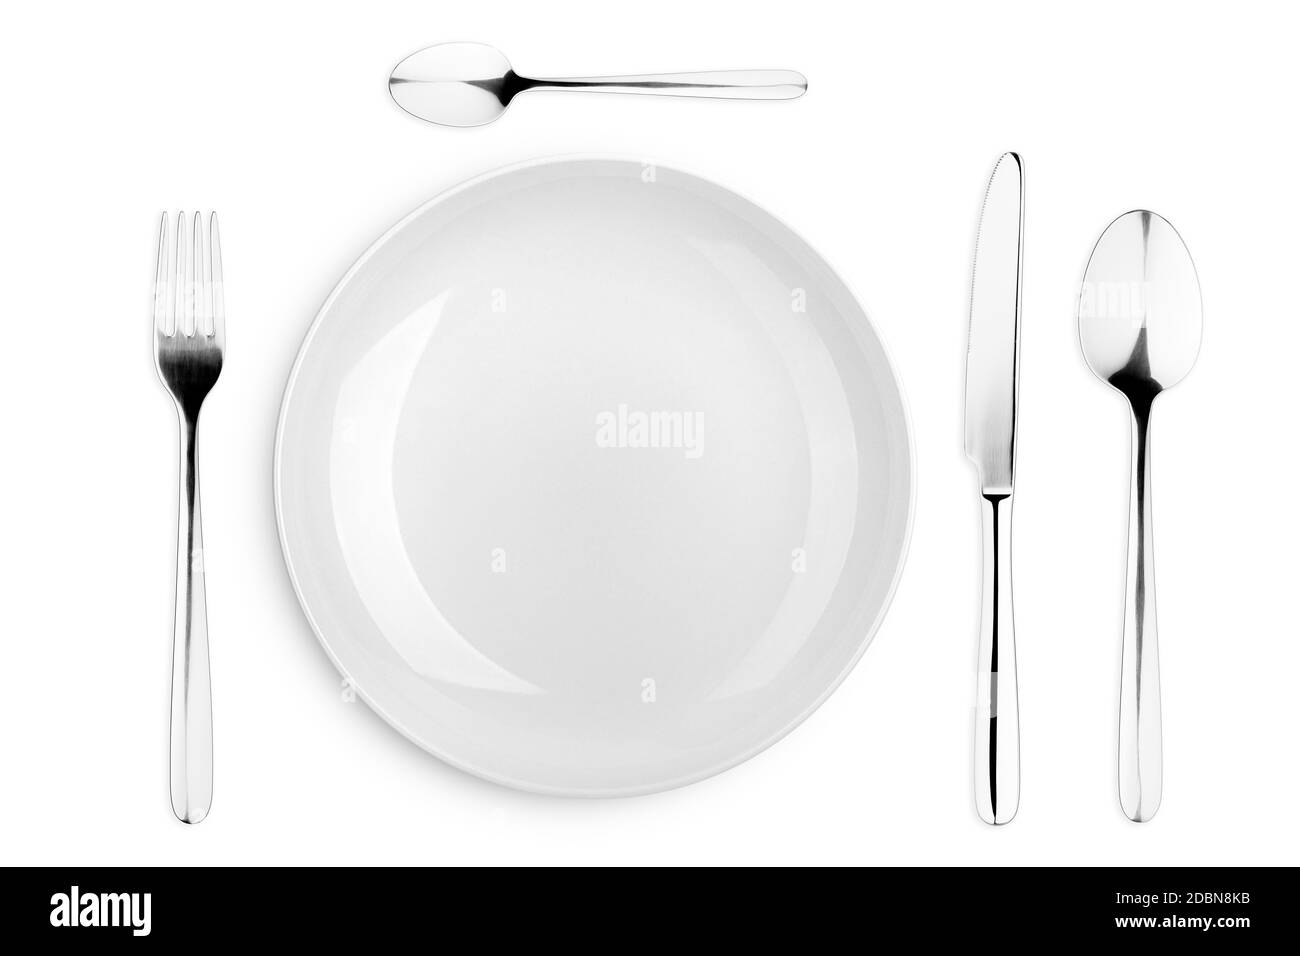 Piastra vuota, cucchiaio, cucchiaino da tè, forchetta, coltello, percorso di ritaglio, sfondo bianco, isolato, vista dall'alto Foto Stock